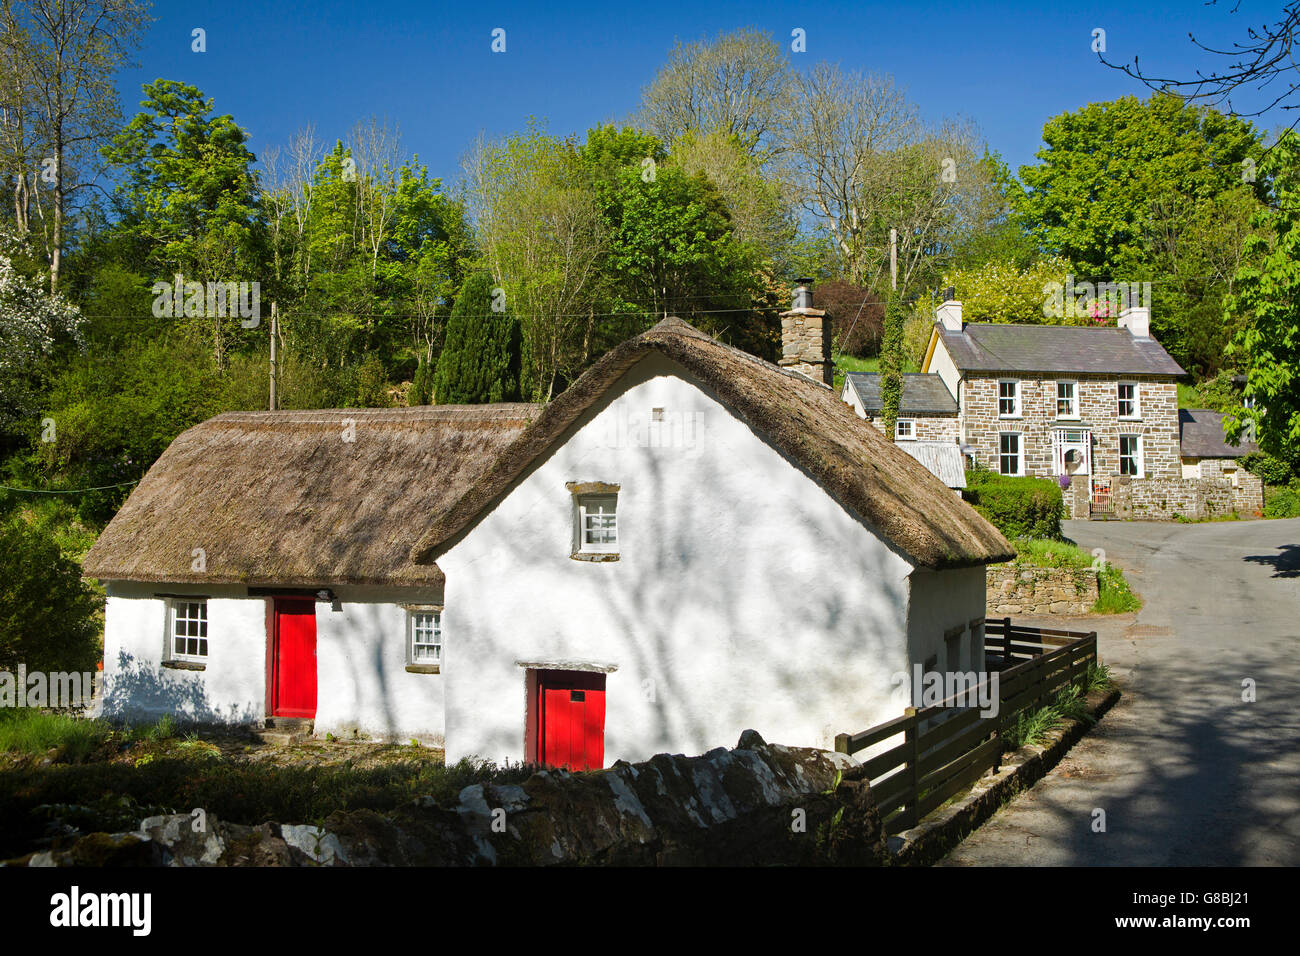 Royaume-uni, Pays de Galles, Ceredigion, Penbontrhydyfothau, thatched cottage dans petit hameau Banque D'Images